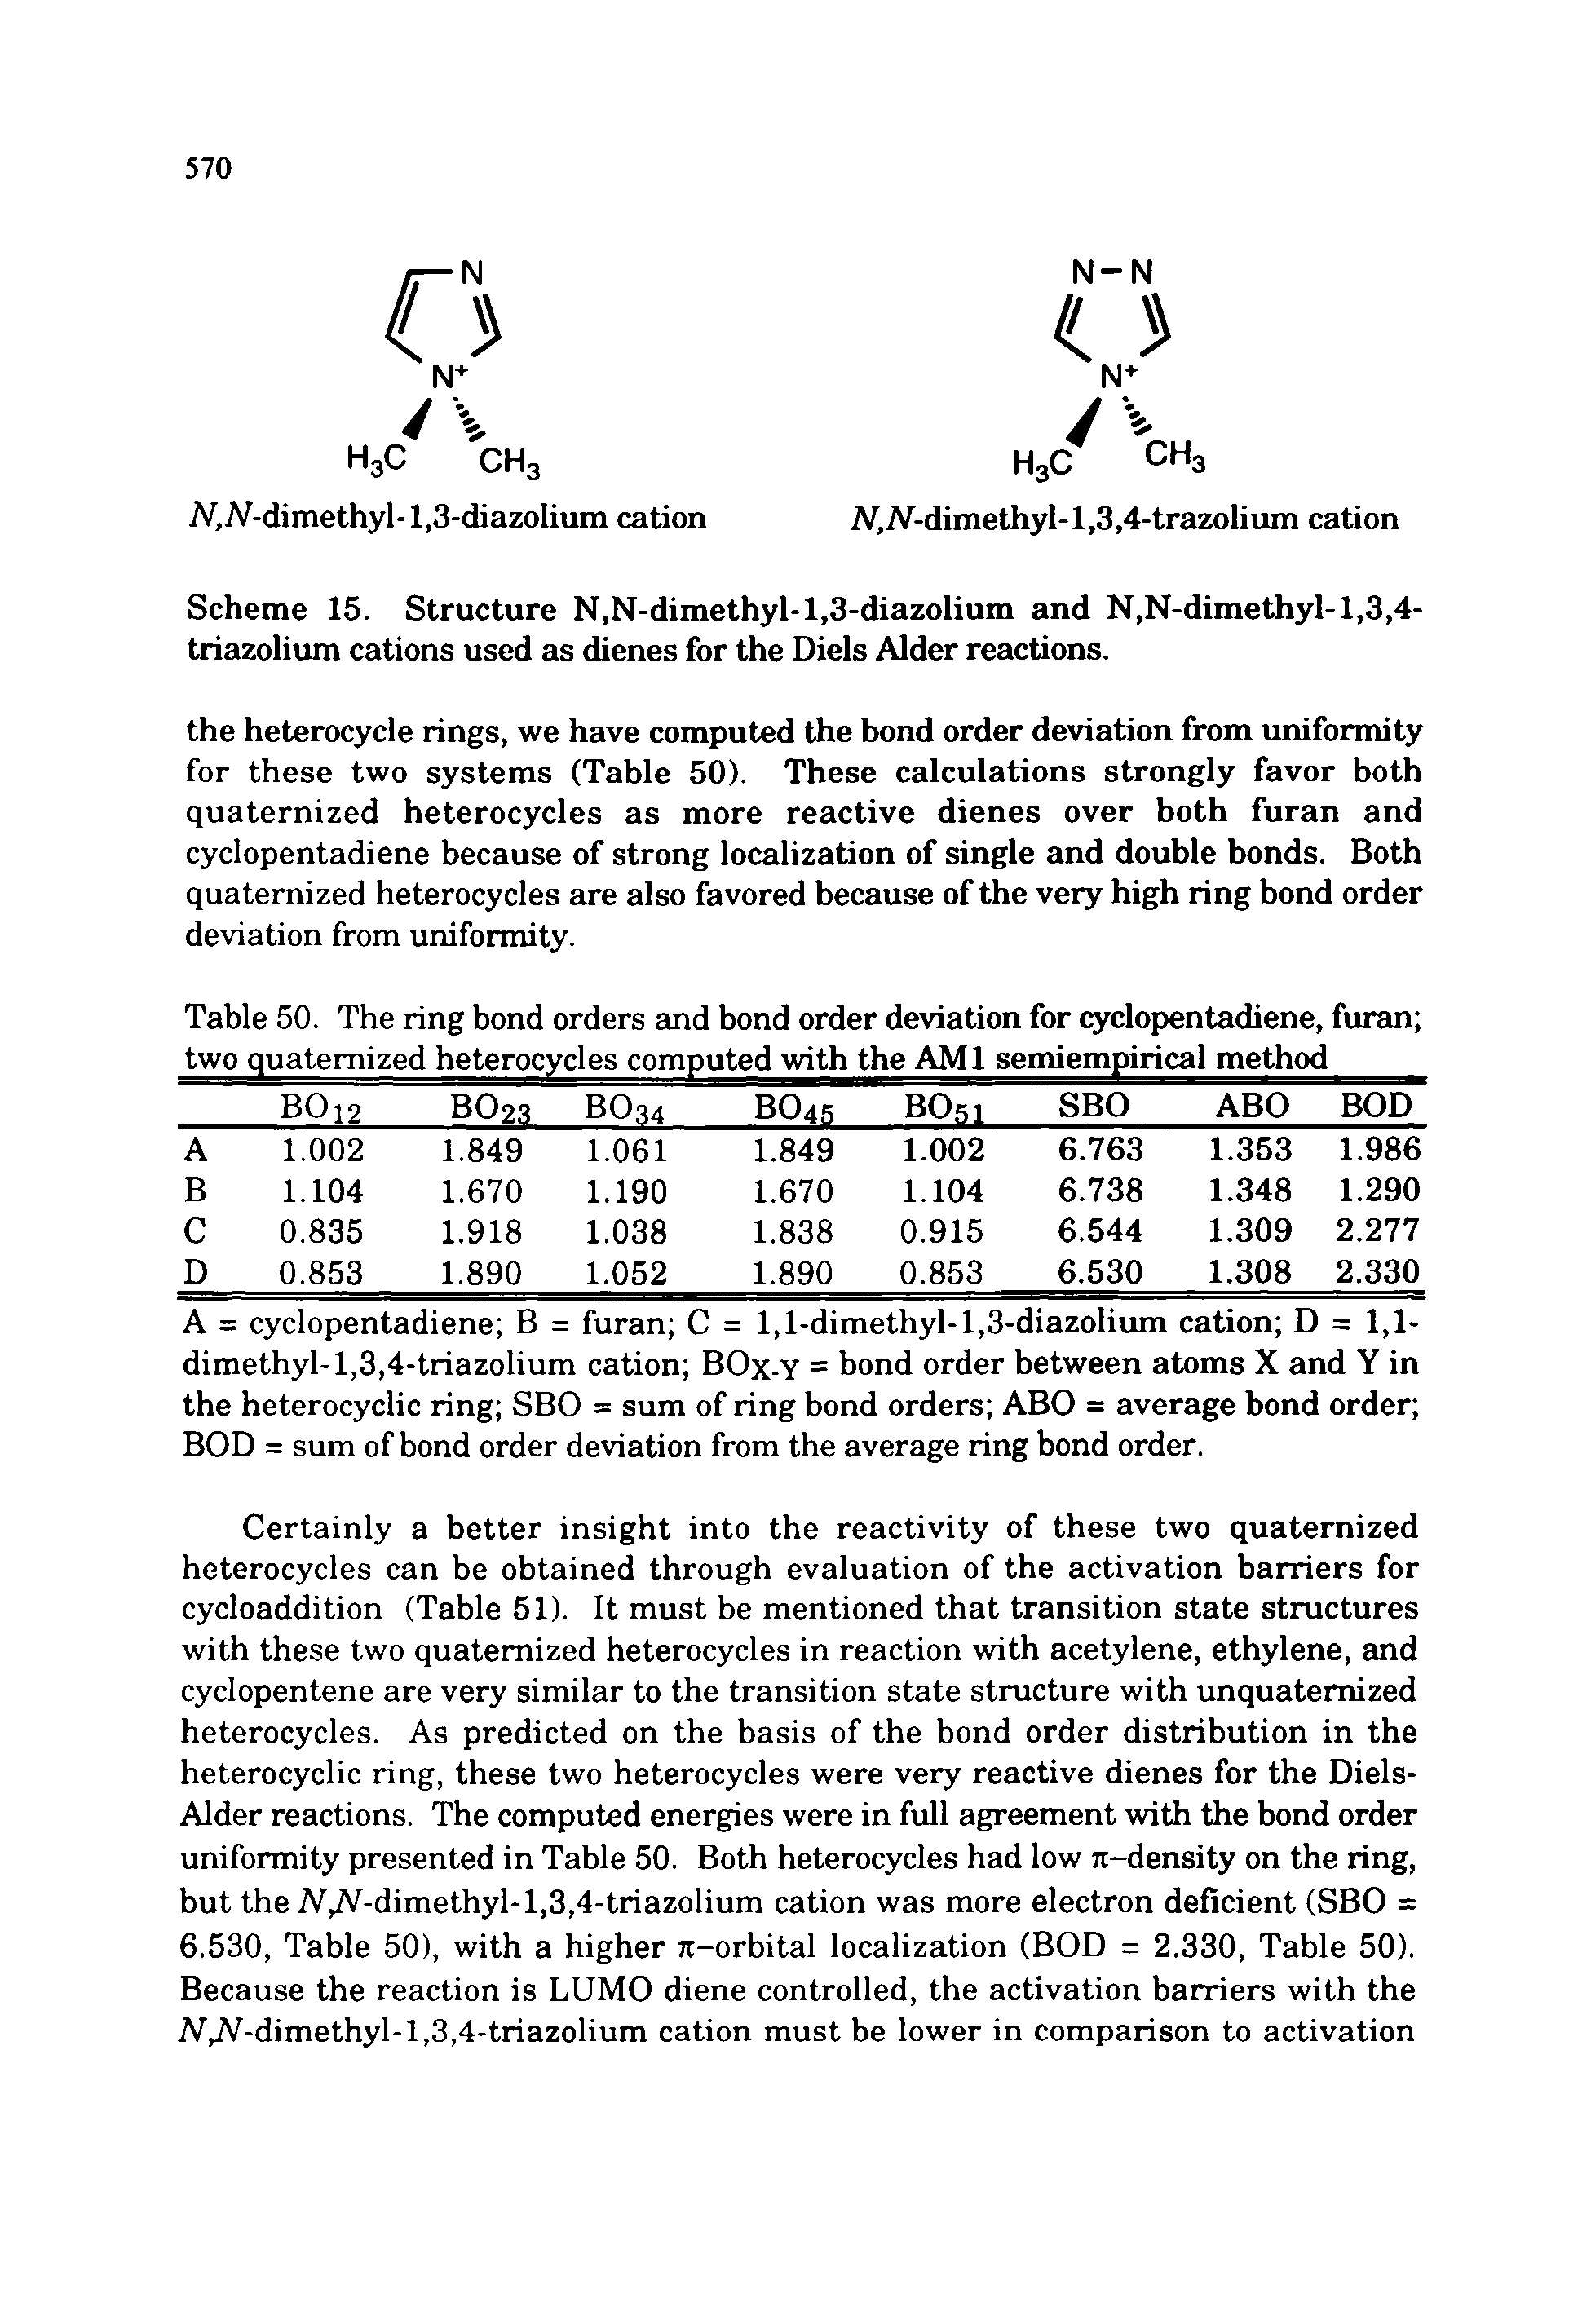 Scheme 15. Structure N,N-dimethyl-l,3-diazolium and N,N-dimethyl-1,3,4-triazolium cations used as dienes for the Diels Alder reactions.